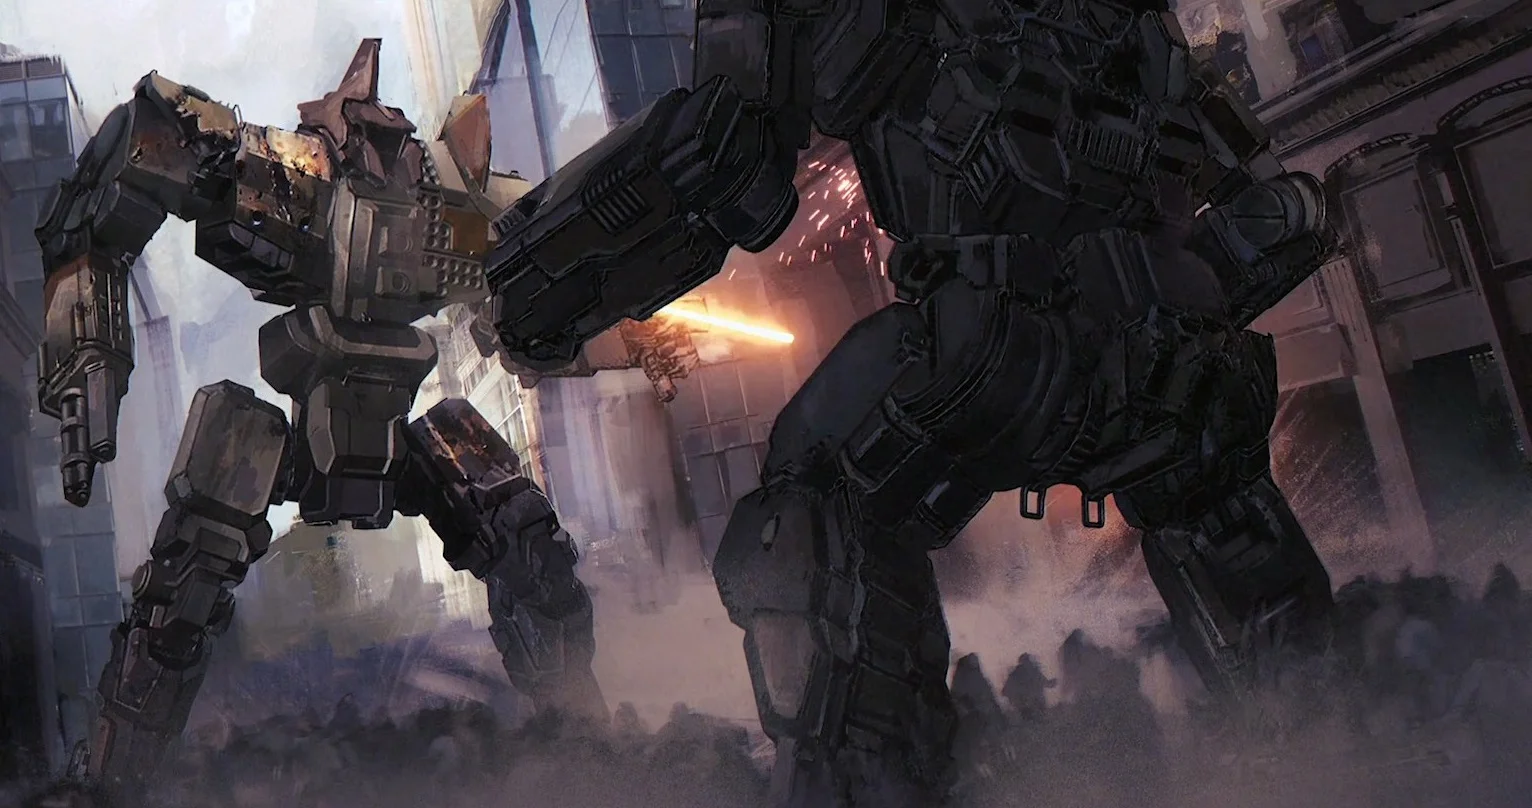 Новая BattleTech — первая из игр, которые вернут гигантских человекоподобных роботов на экраны мониторов. Где-то позже в 2018 году выйдет MechWarrior 5. From Software, по слухам, делает новую Armored Core. Konami переиздает Zone of the Enders. И серия Front Mission тоже скоро вернется — правда, пока только в виде спин-оффа Left Alive. Лед, скажем так, тронулся.